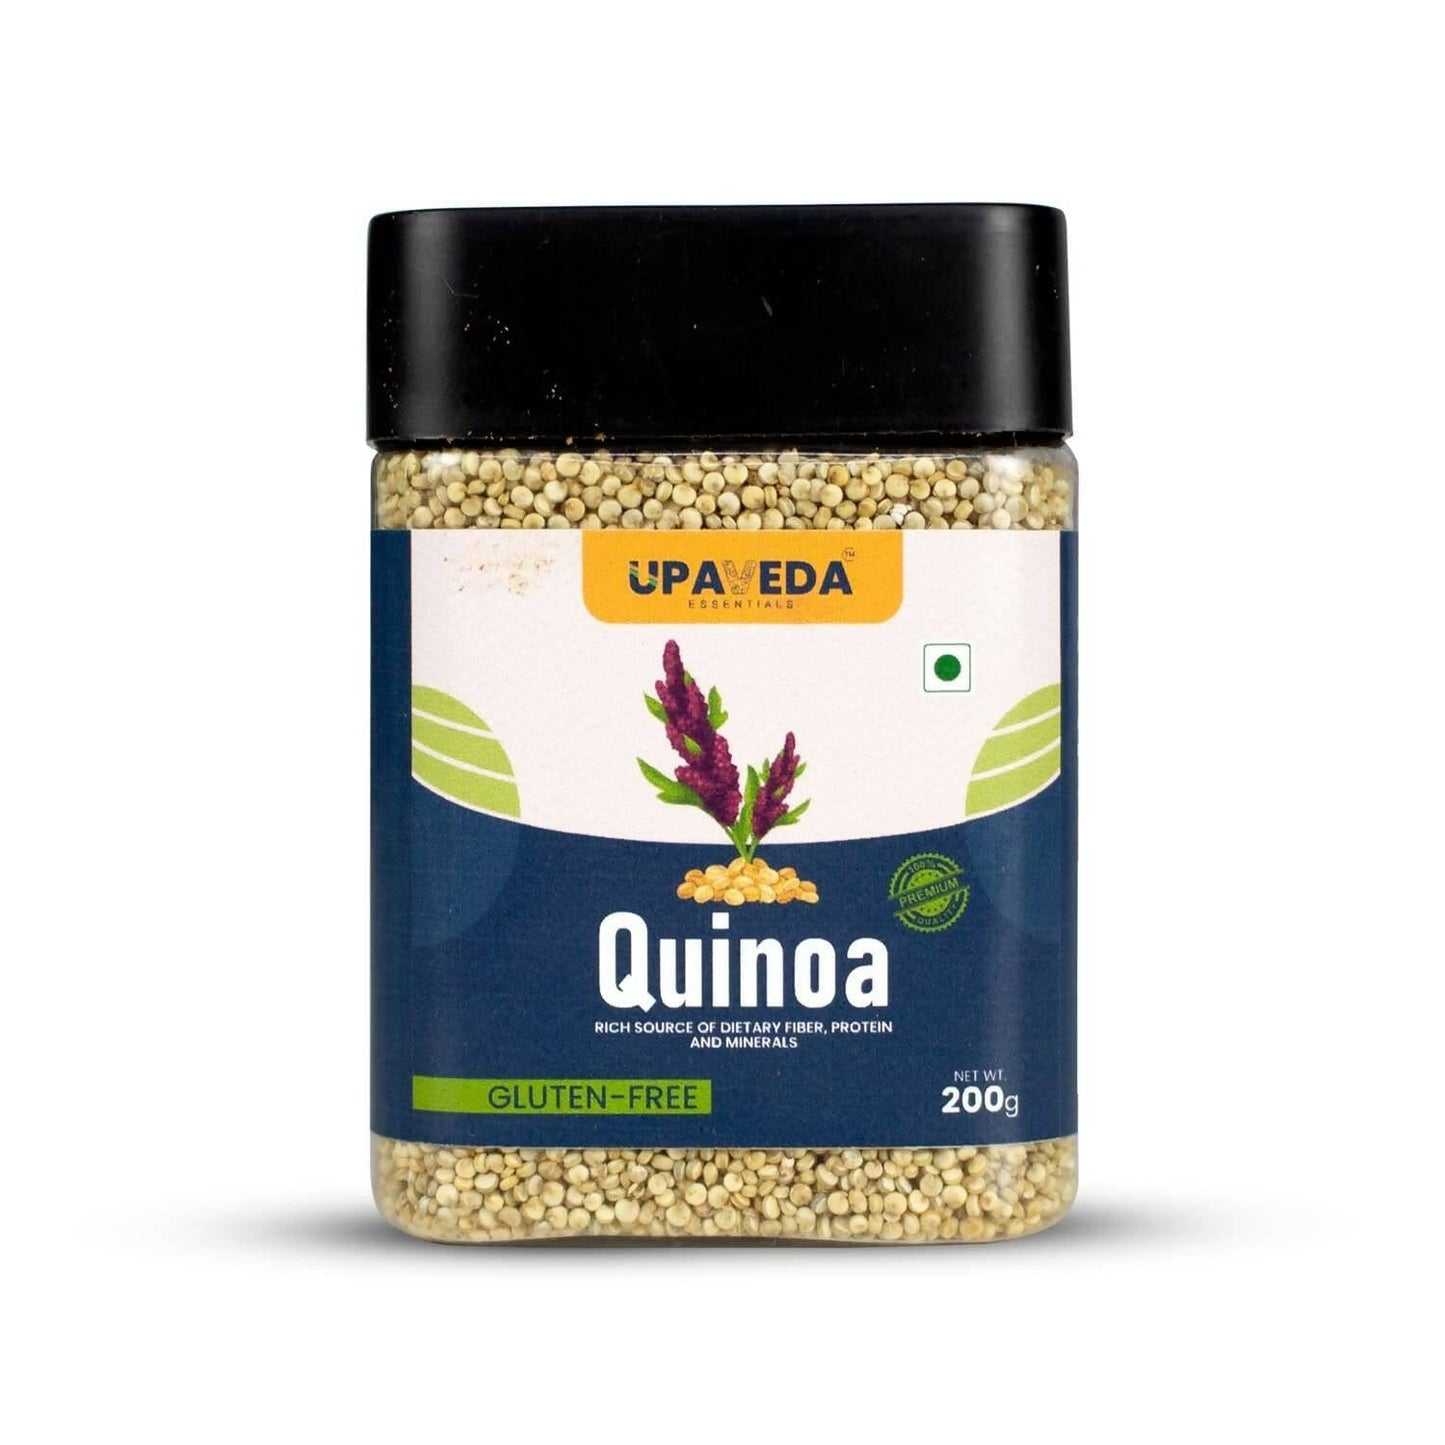 Upaveda Quinoa Seeds - BUDNE